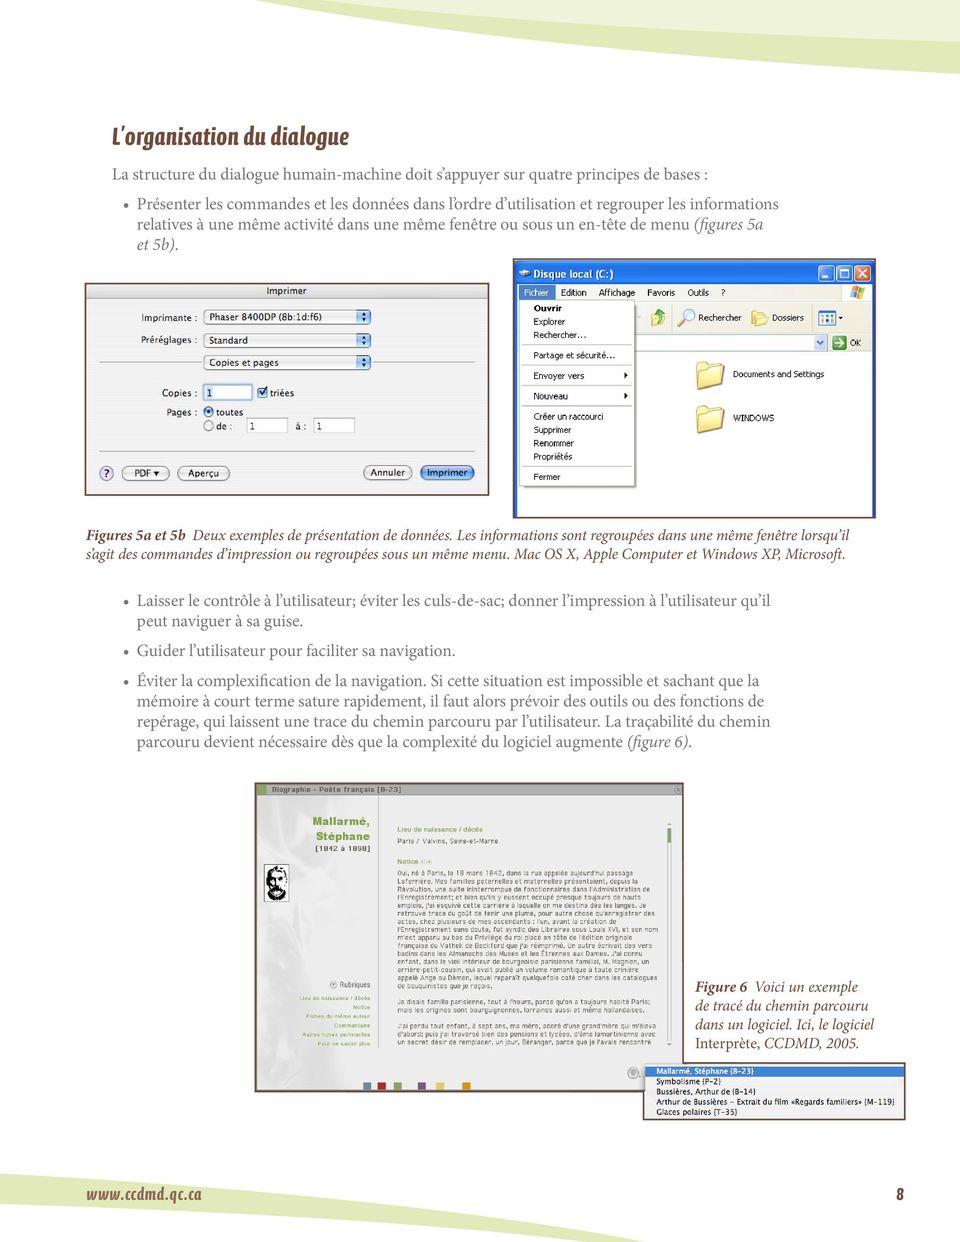 Les informations sont regroupées dans une même fenêtre lorsqu il s agit des commandes d impression ou regroupées sous un même menu. Mac OS X, Apple Computer et Windows XP, Microsoft.